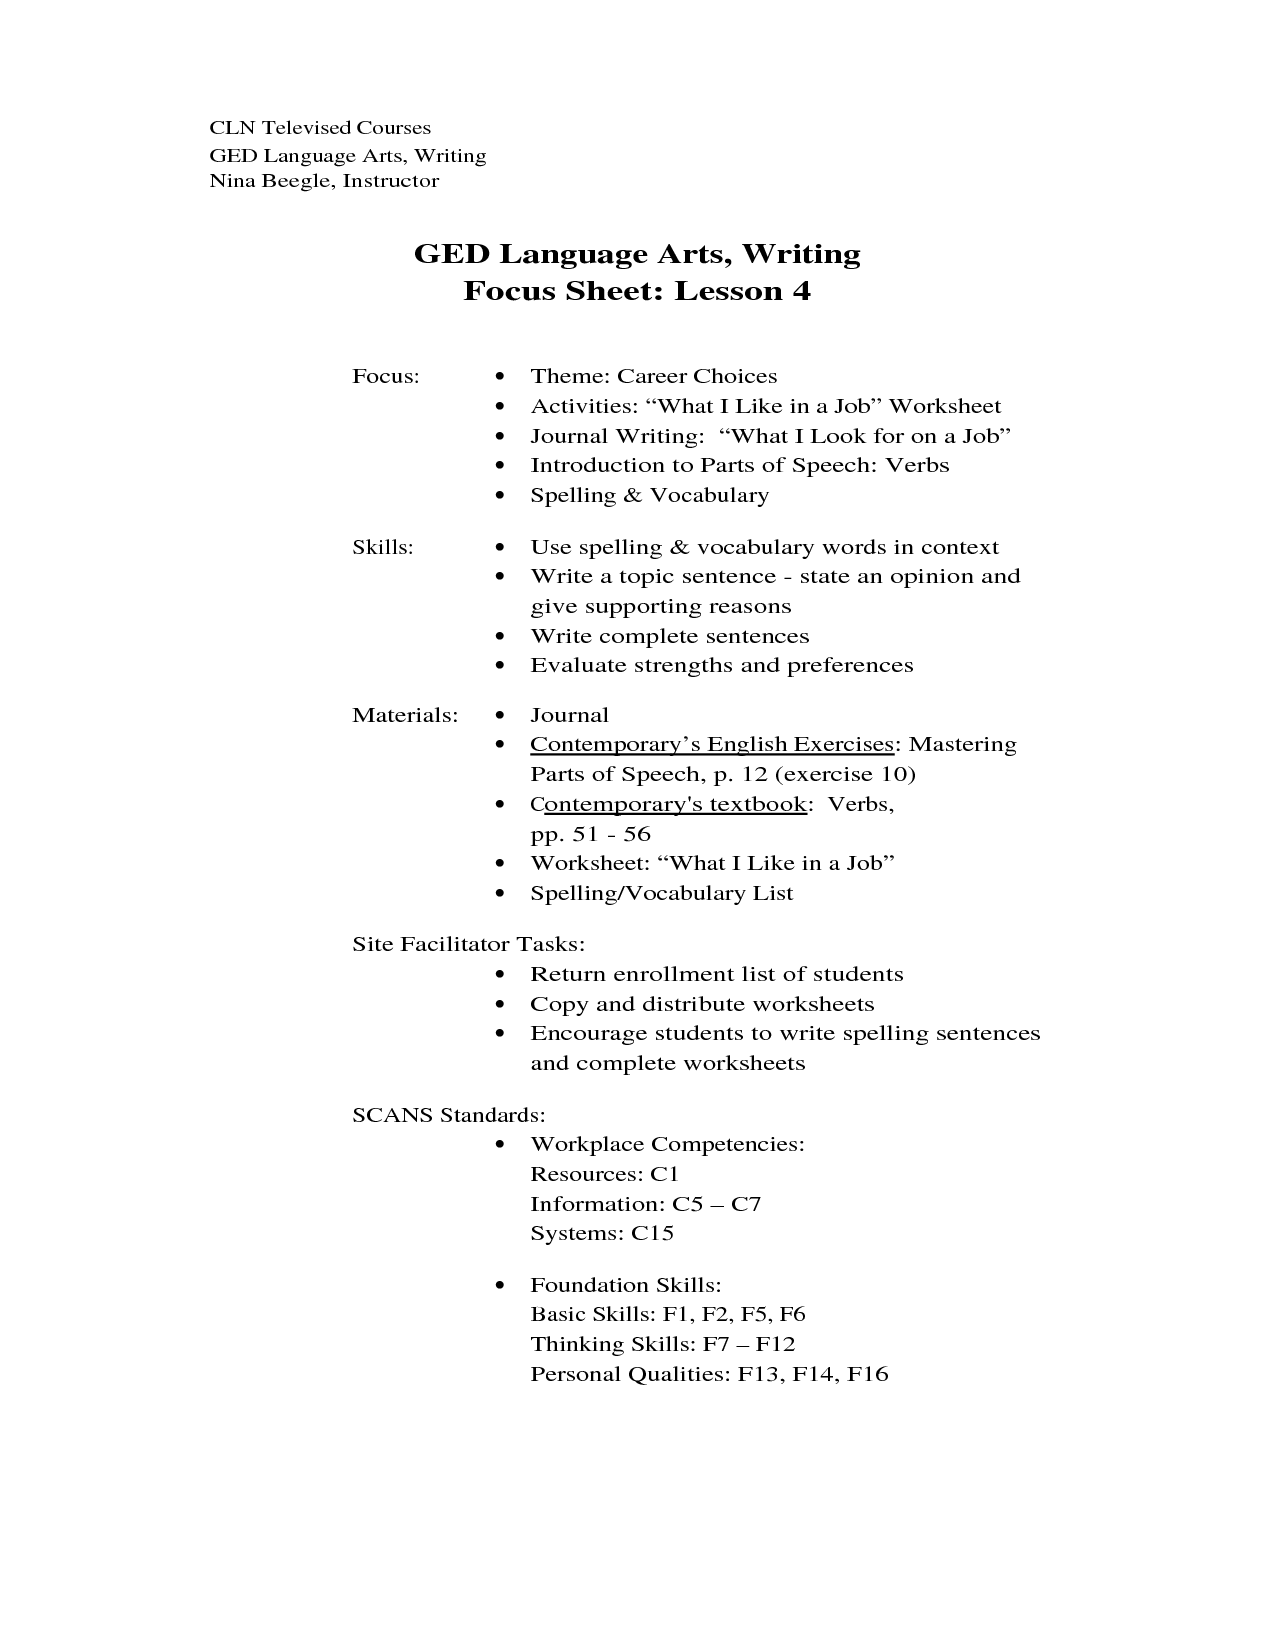 GED Language Arts Writing Worksheets